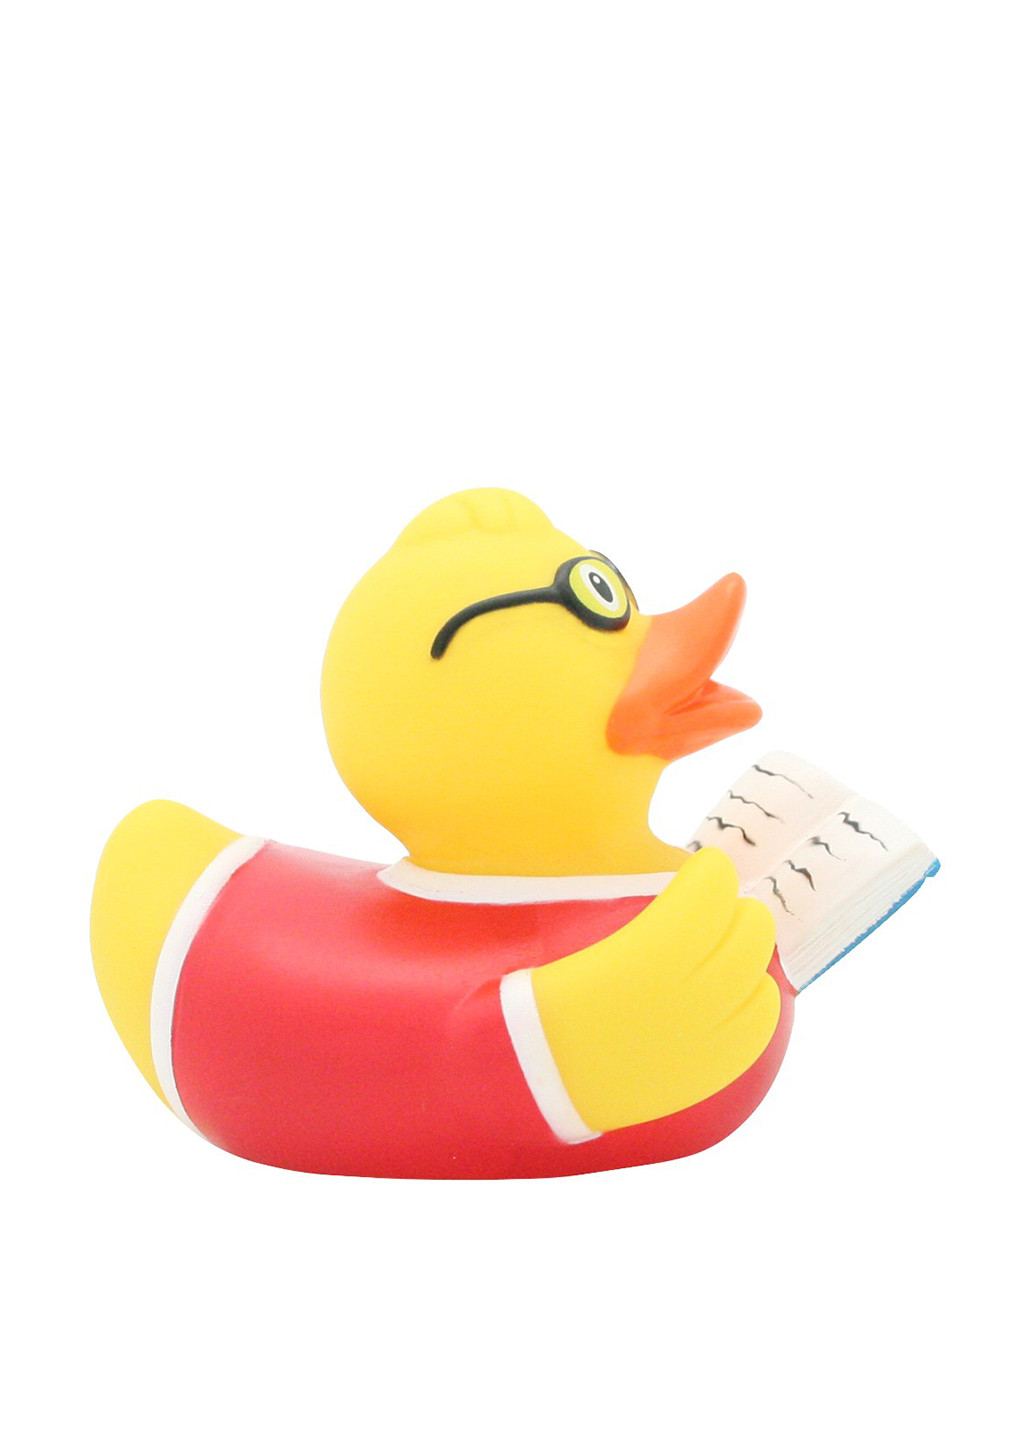 Игрушка для купания Утка Писатель, 8,5x8,5x7,5 см Funny Ducks (250618747)